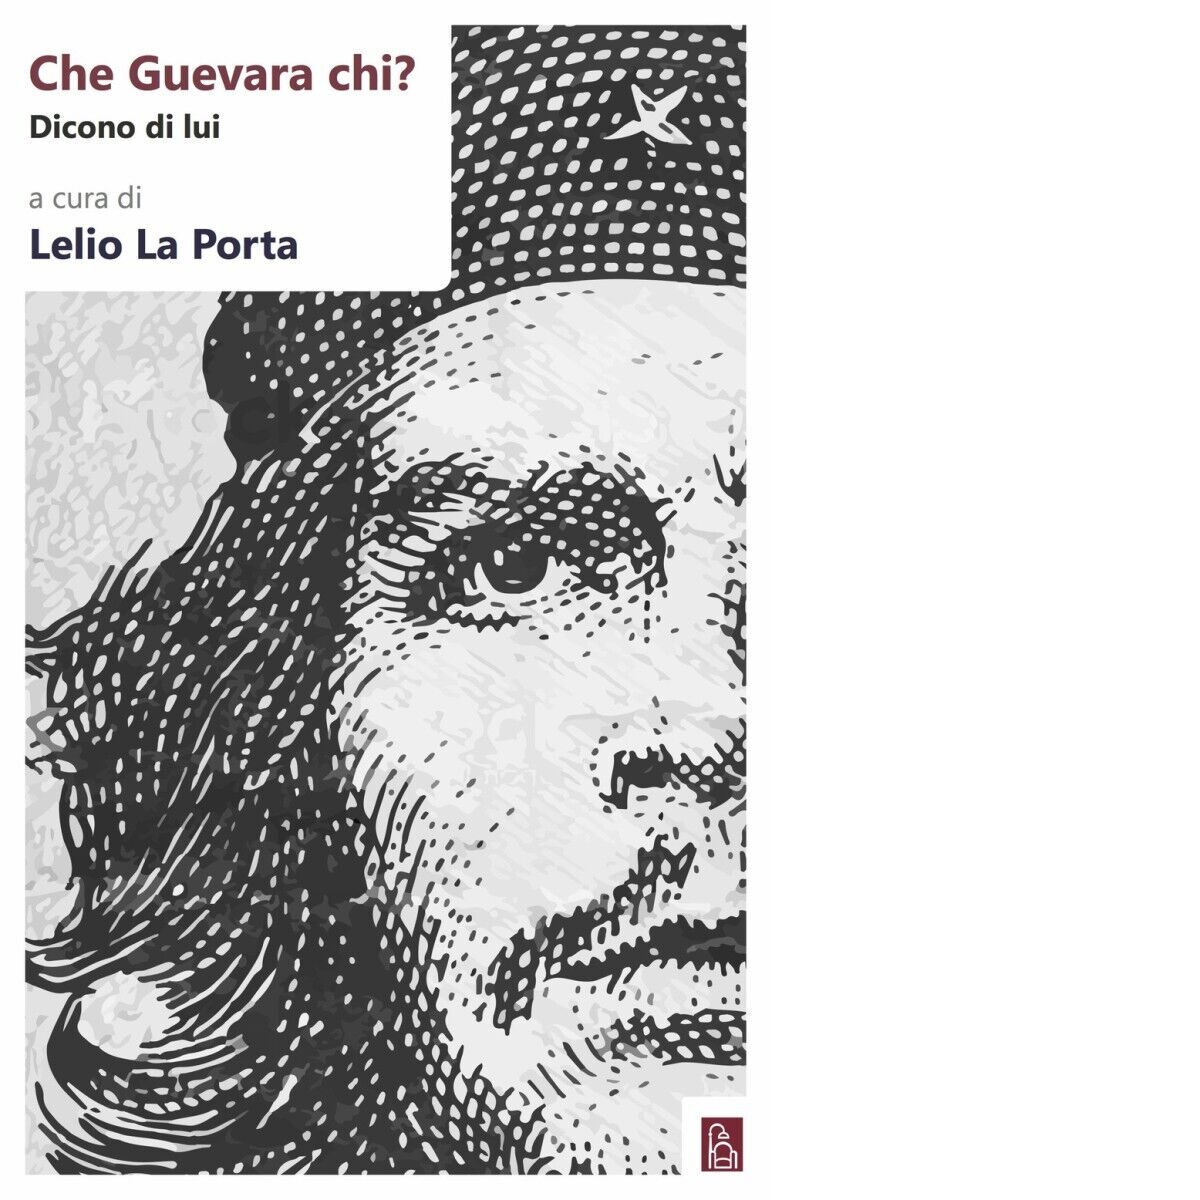 Che Guevara chi? Dicono di lui di L. La Porta, 2018, Bordeaux